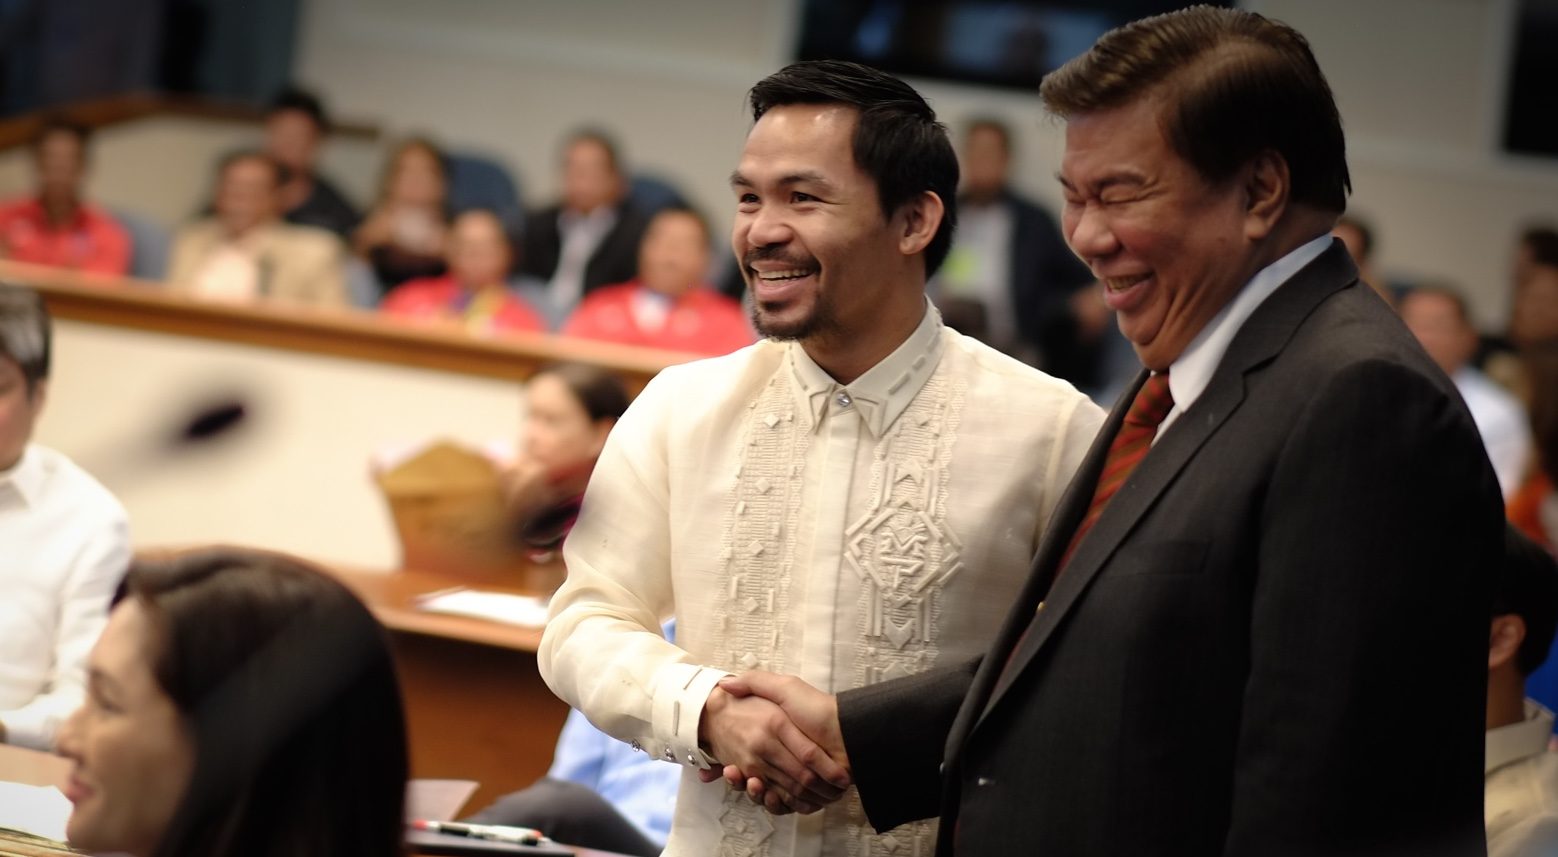 Drilon-Pacquiao ‘debate’ draws laughter in Senate session